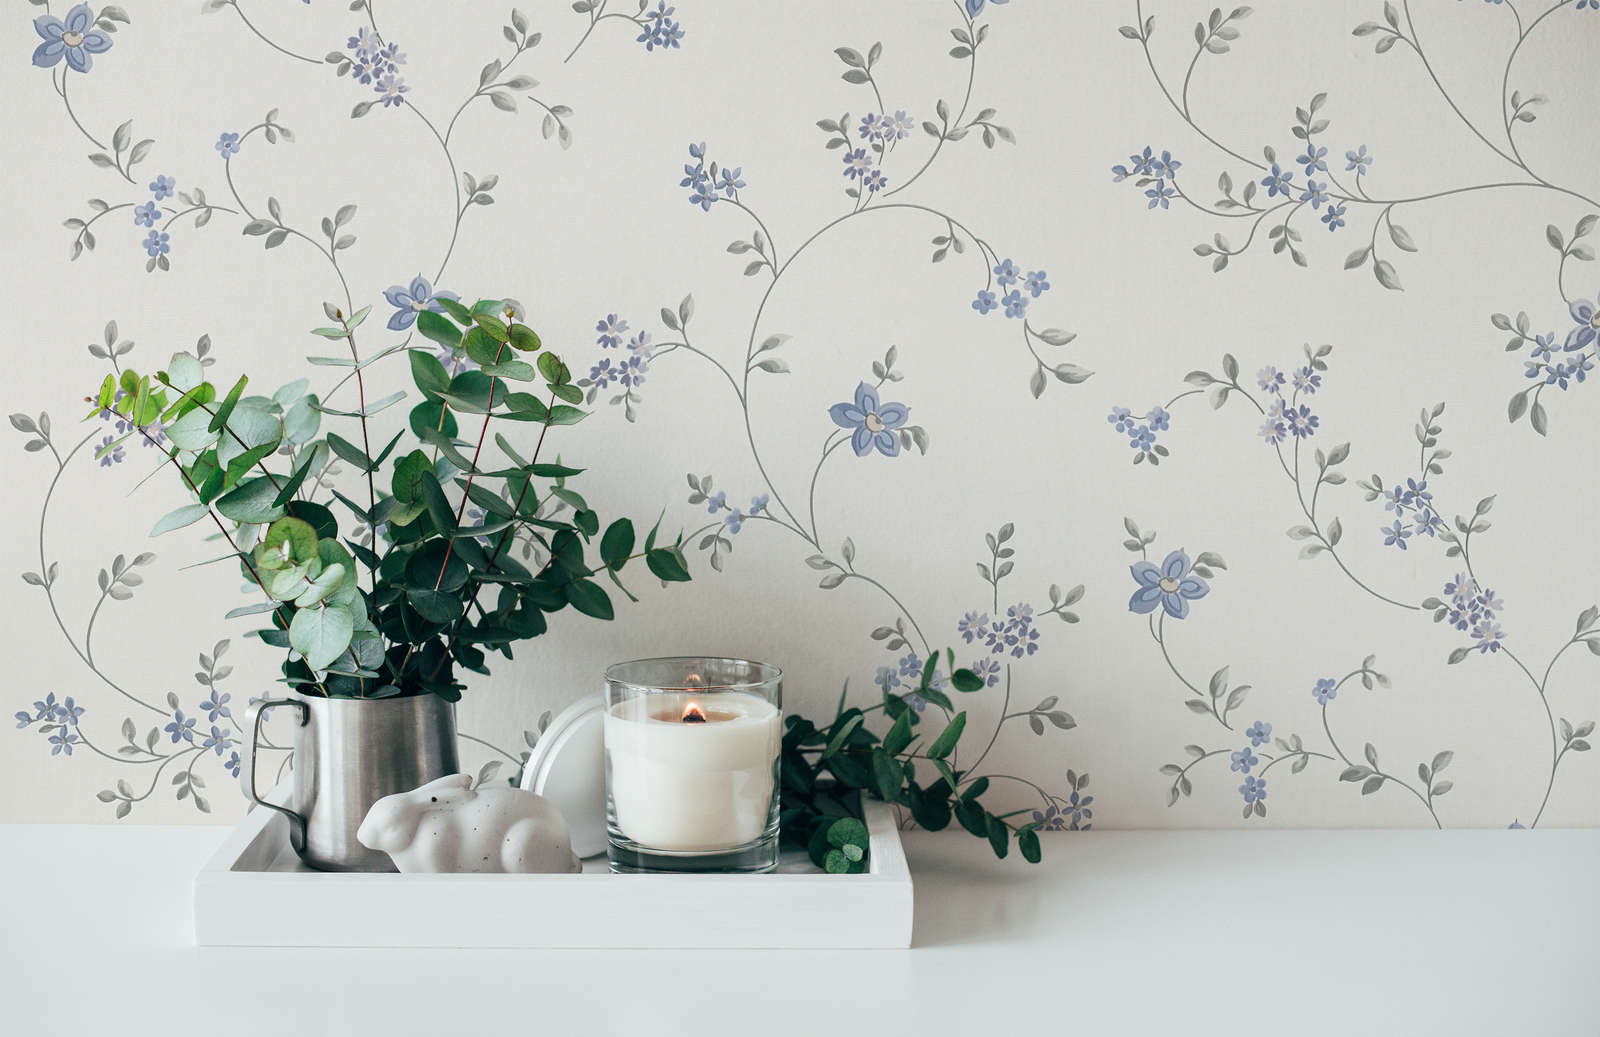             Vliestapete mit Blumenranken im Landhausstil – Creme, Grau, Blau
        